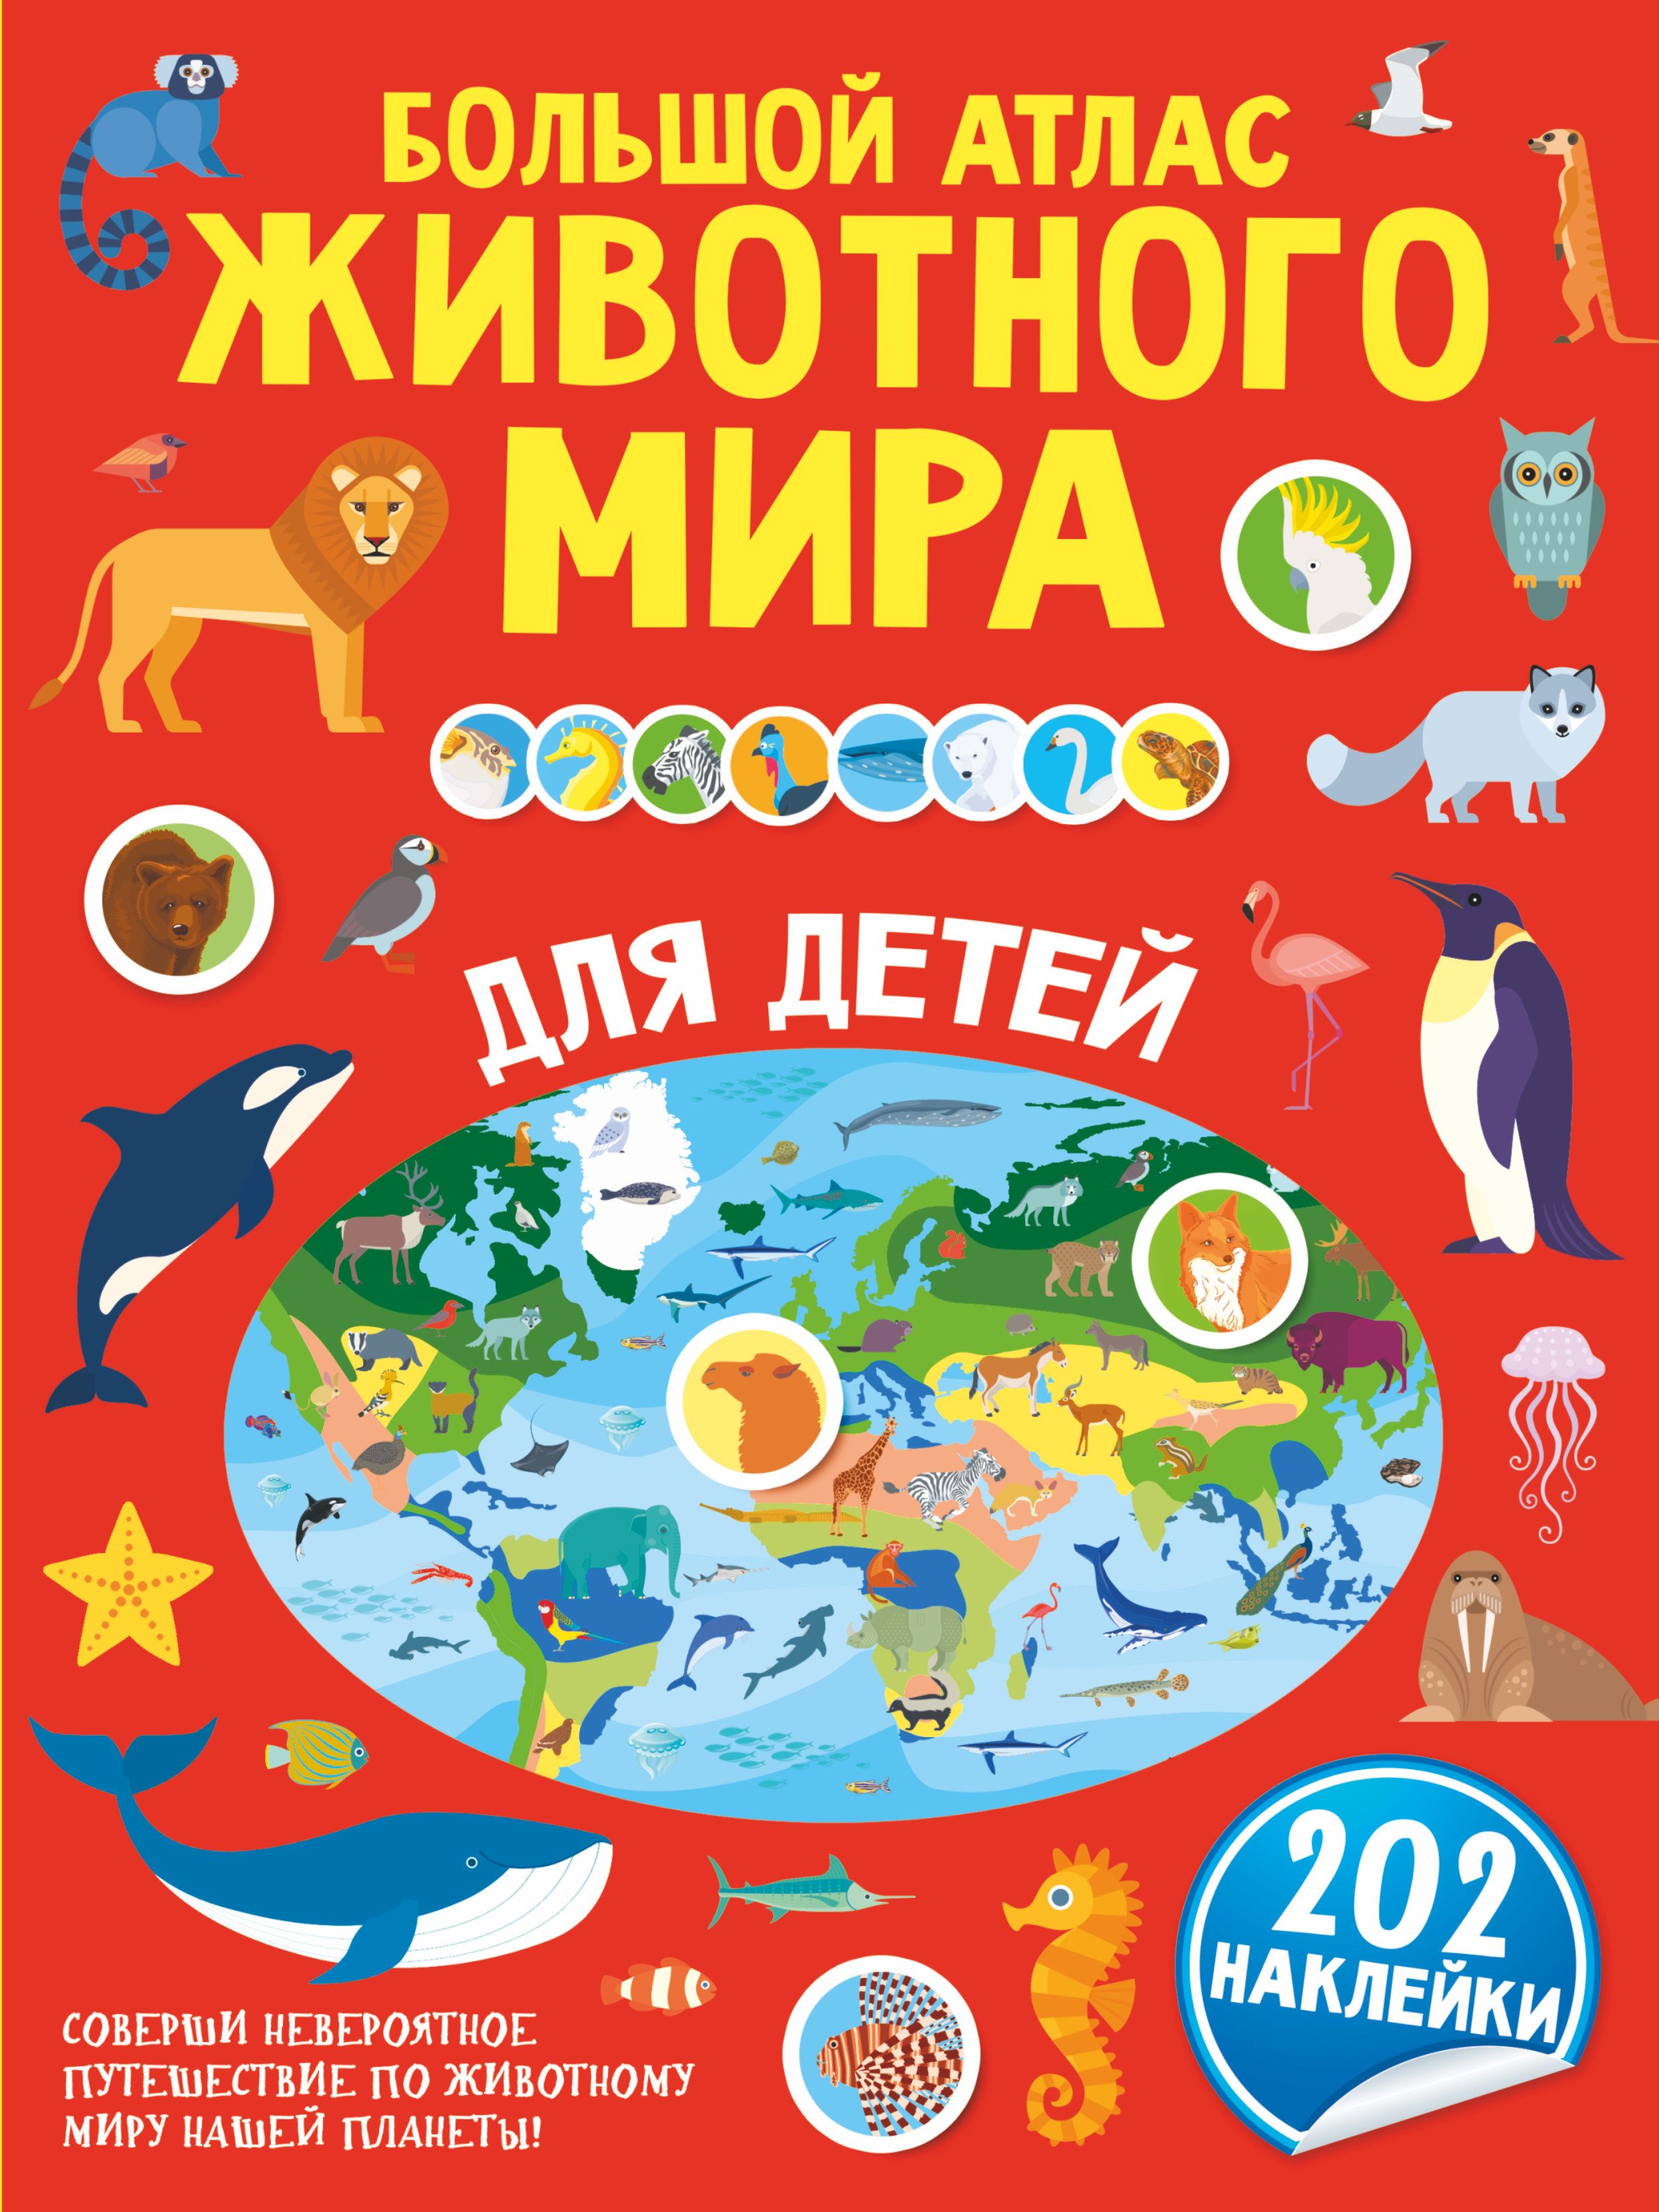 Большой атлас животного мира для детей алгарра а чудеса животного мира для любознательных детей комплект из 4 книг